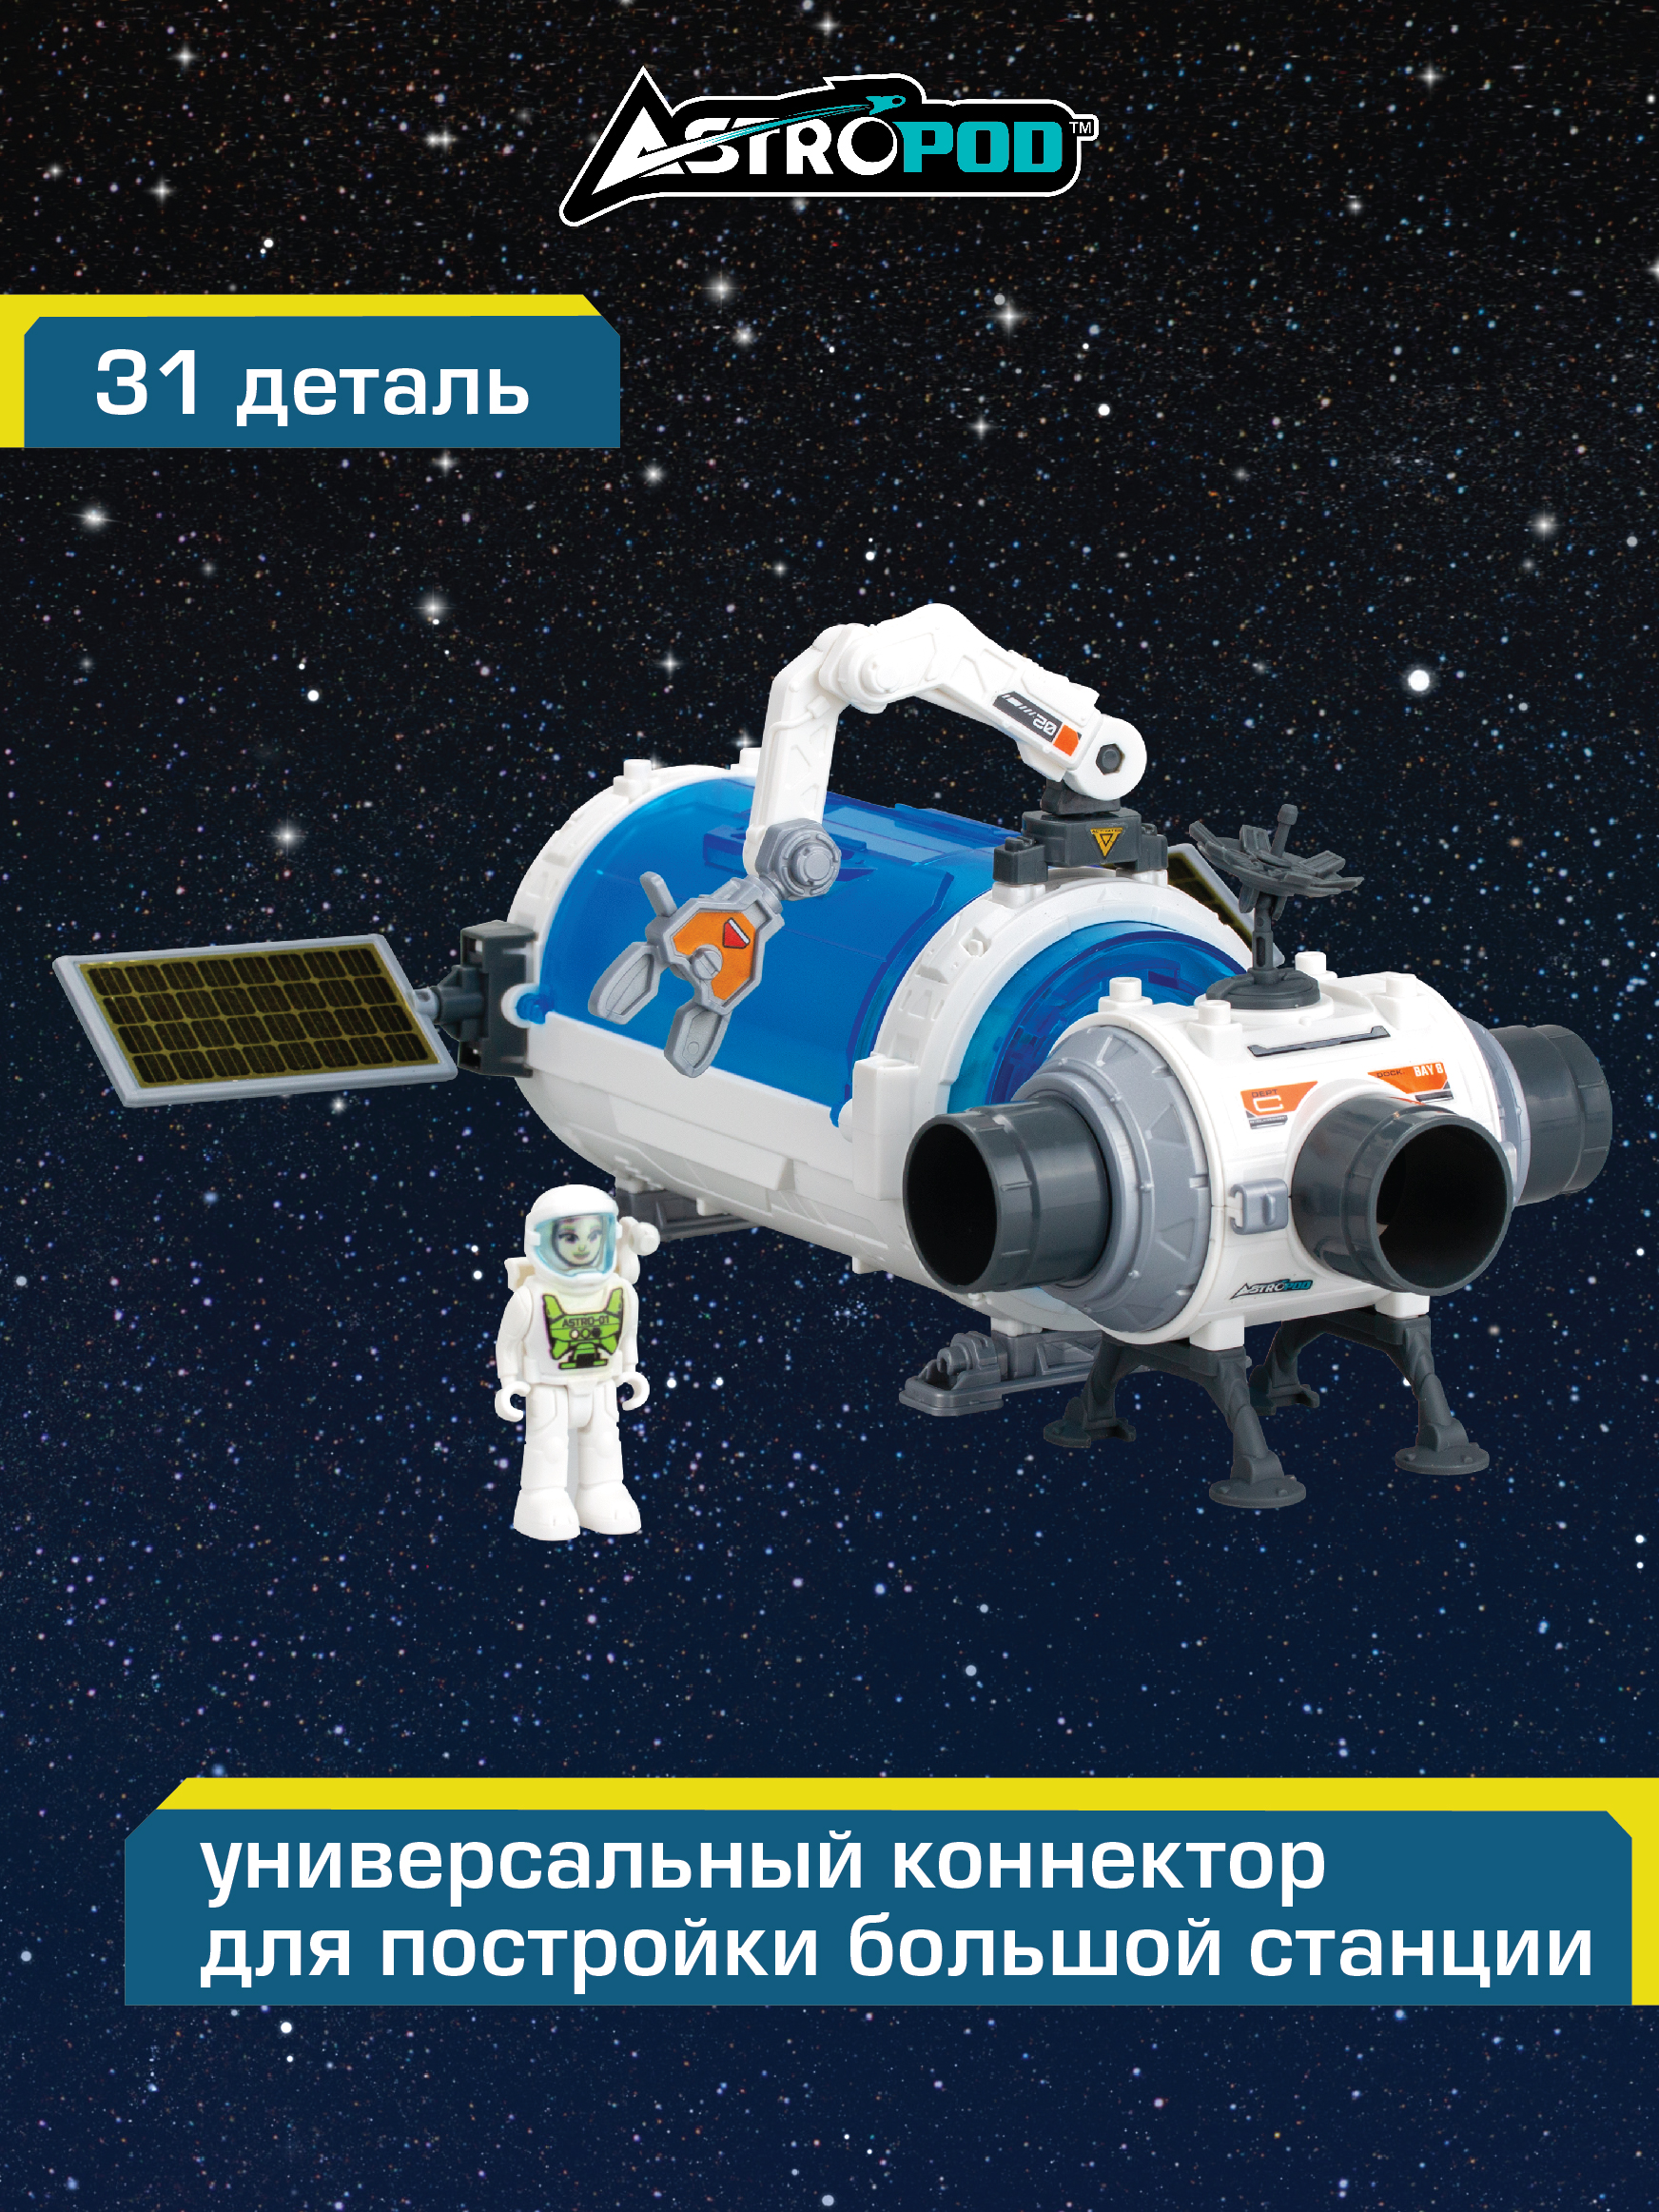 Космическая станция с космонавтом, космический корабль, ASTROPOD